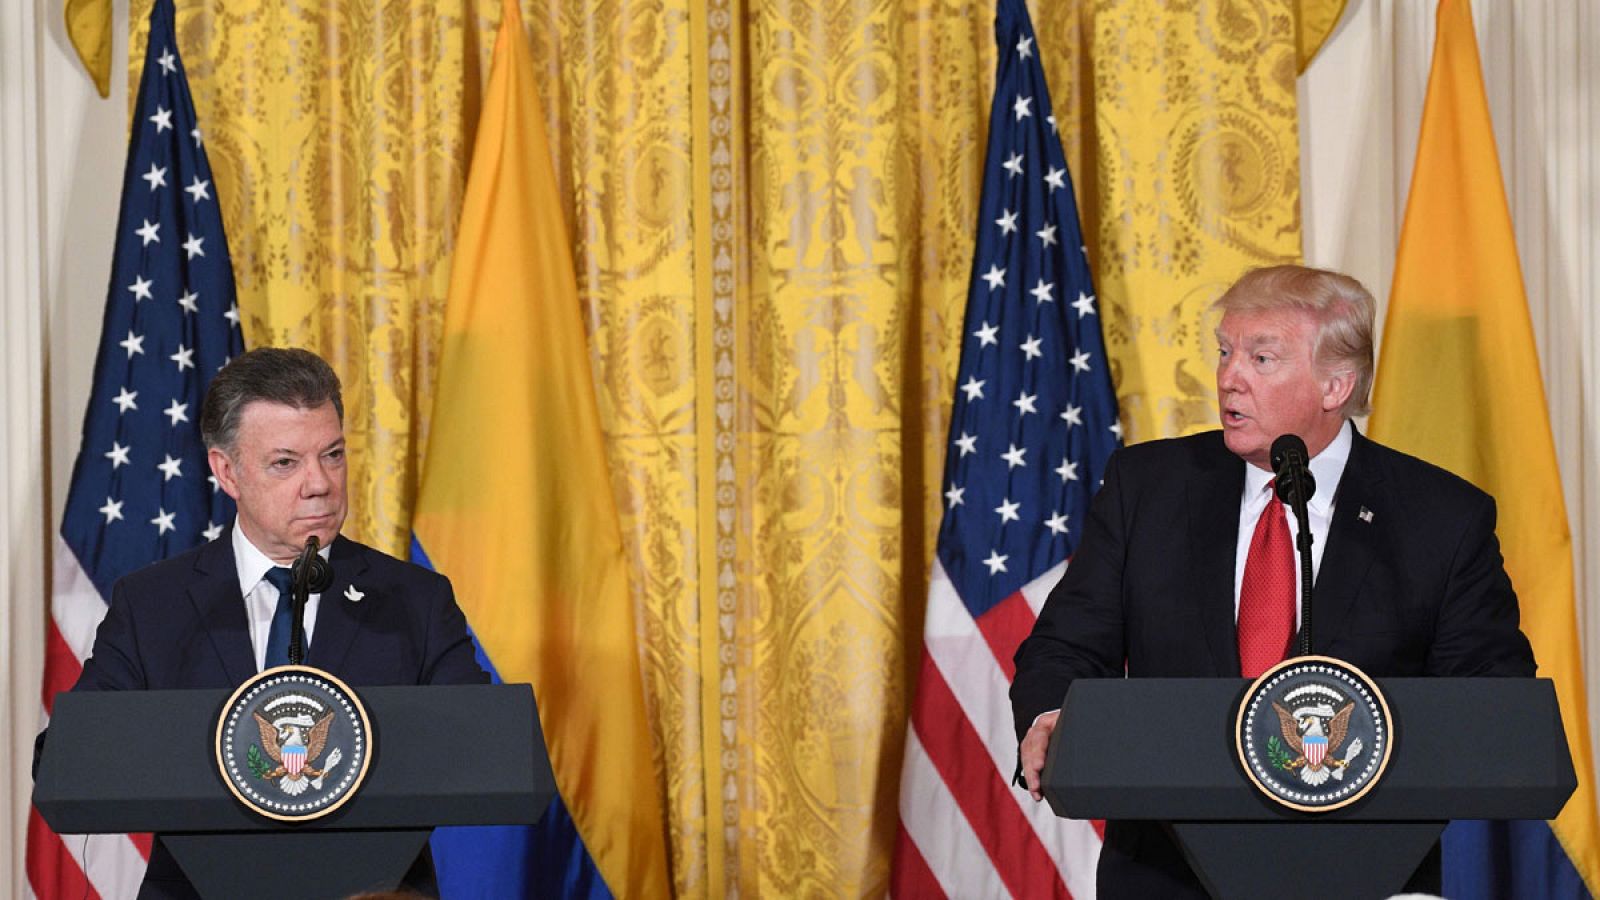 Trump durante la rueda de prensa que ha ofrecido junto al presidente de Colombia, Juan Manuel Santos, el jueves 18 de mayo de 2017 en la Casa Blanca.